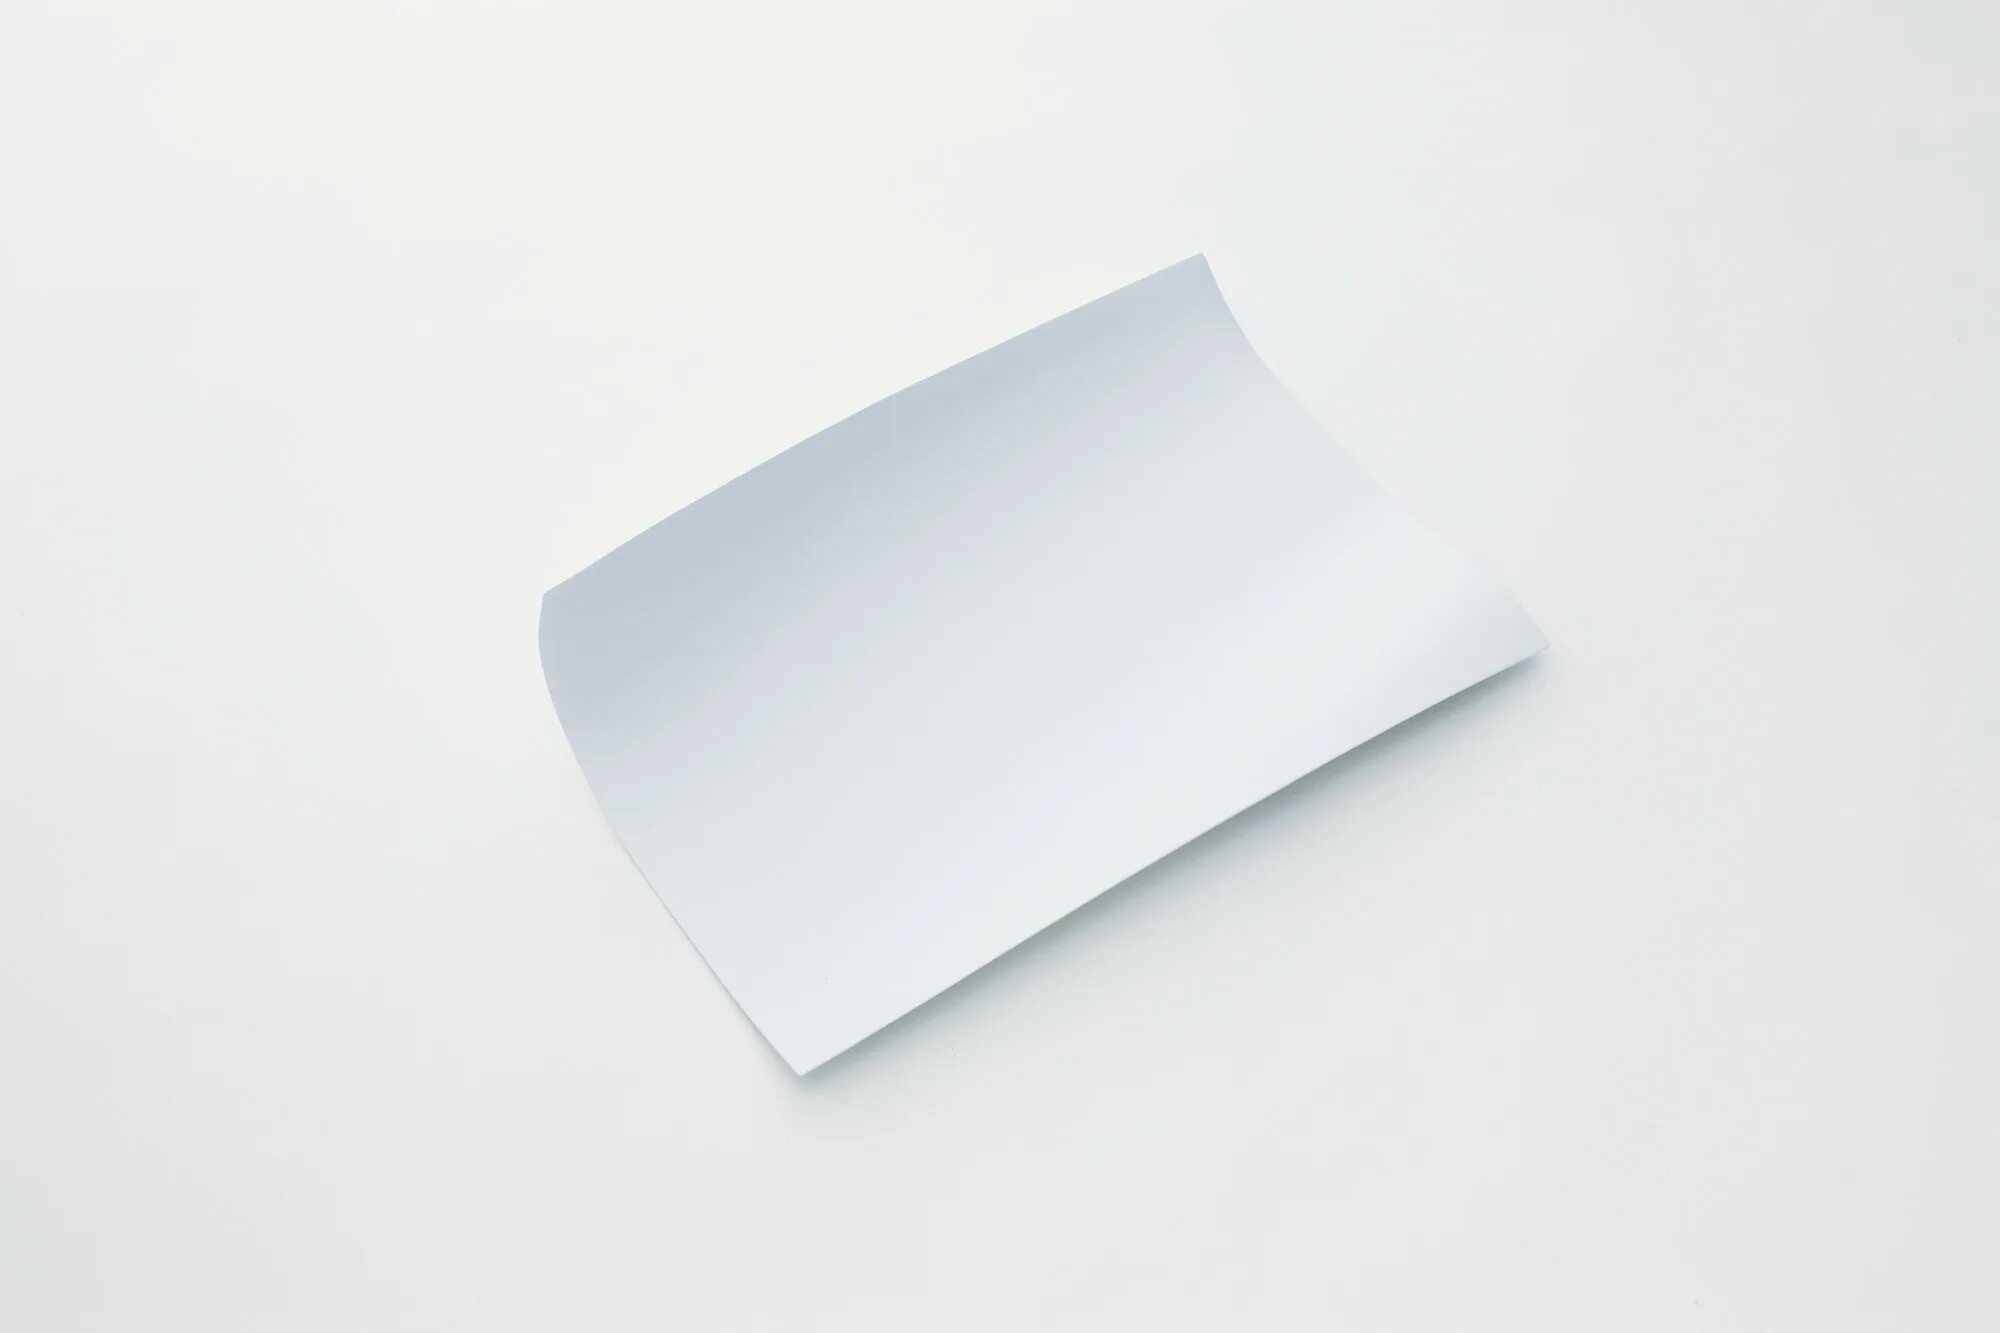 Бумага е. Лист бумаги. Белый лист бумаги. Лист бумаги на белом фоне. Бумажный лист.